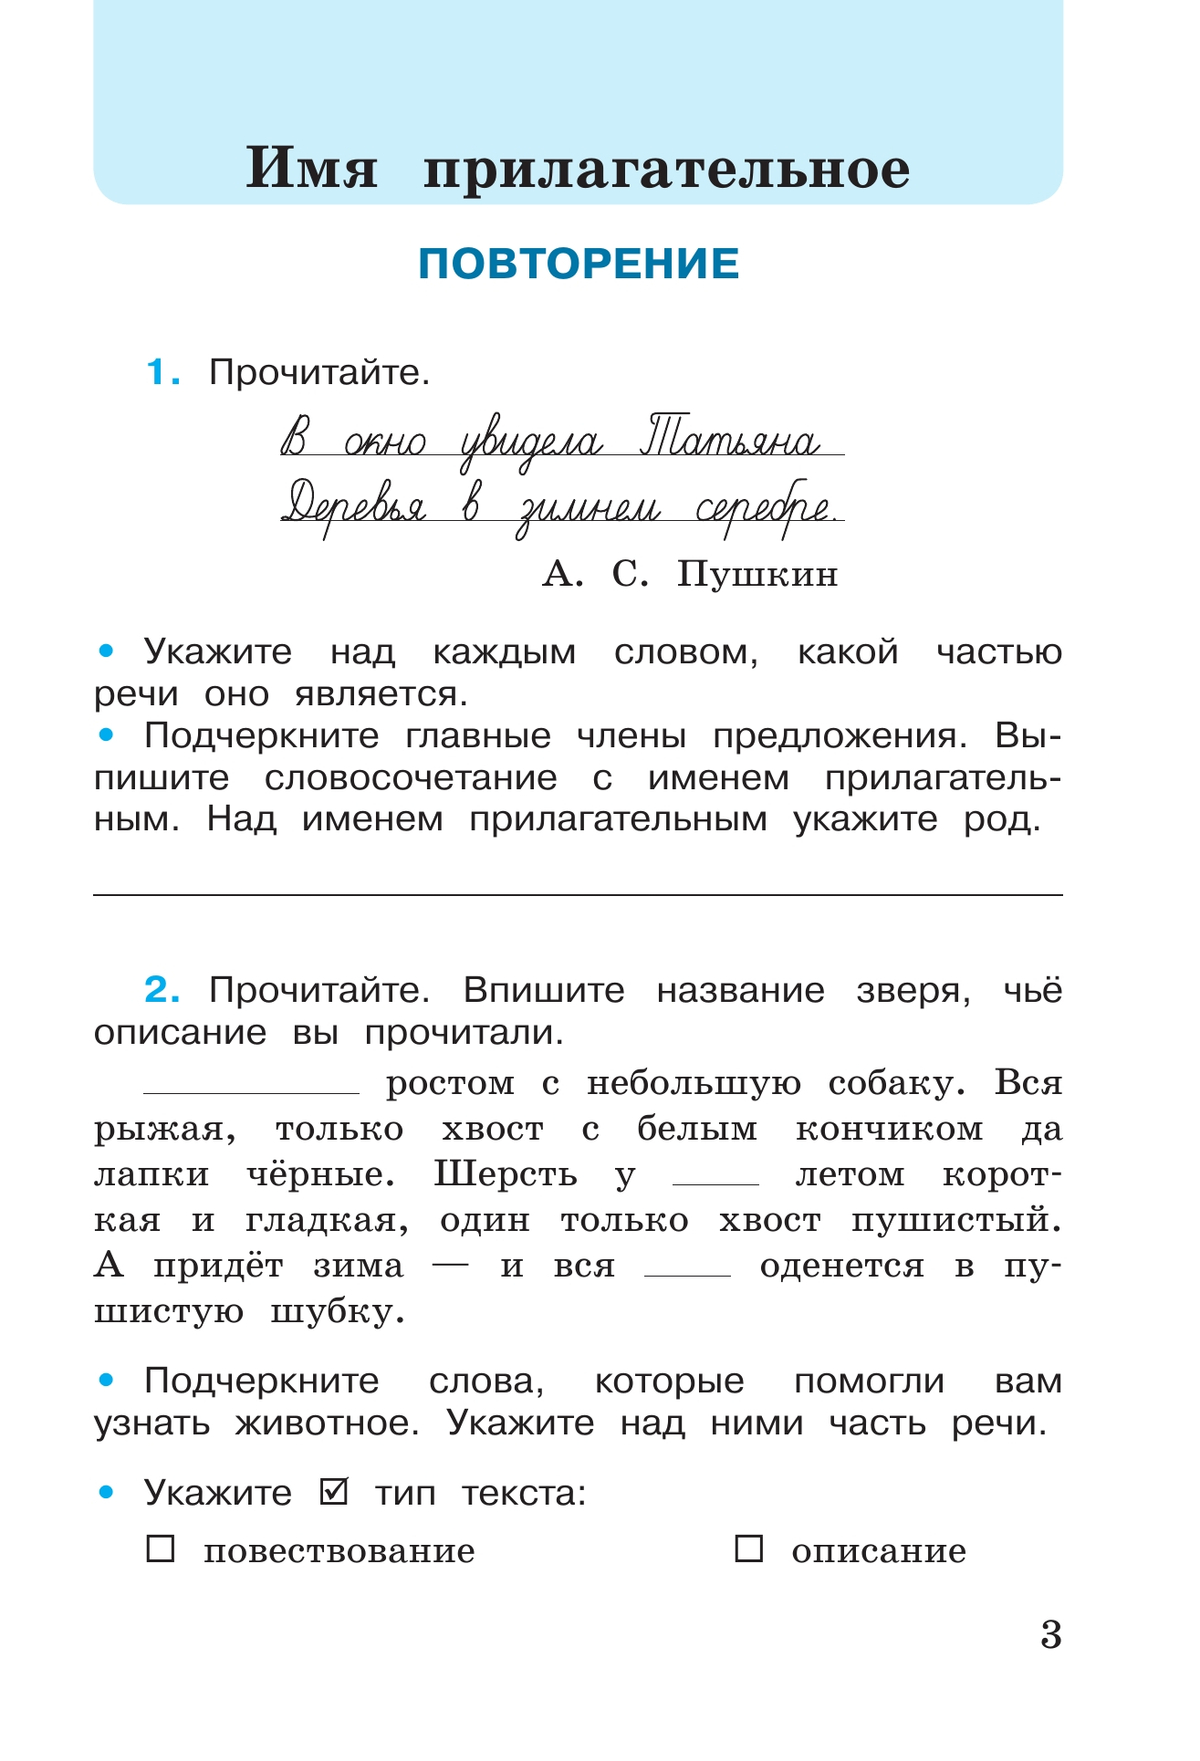 Русский язык. Рабочая тетрадь. 4 класс. В 2-х ч. Ч. 2 4